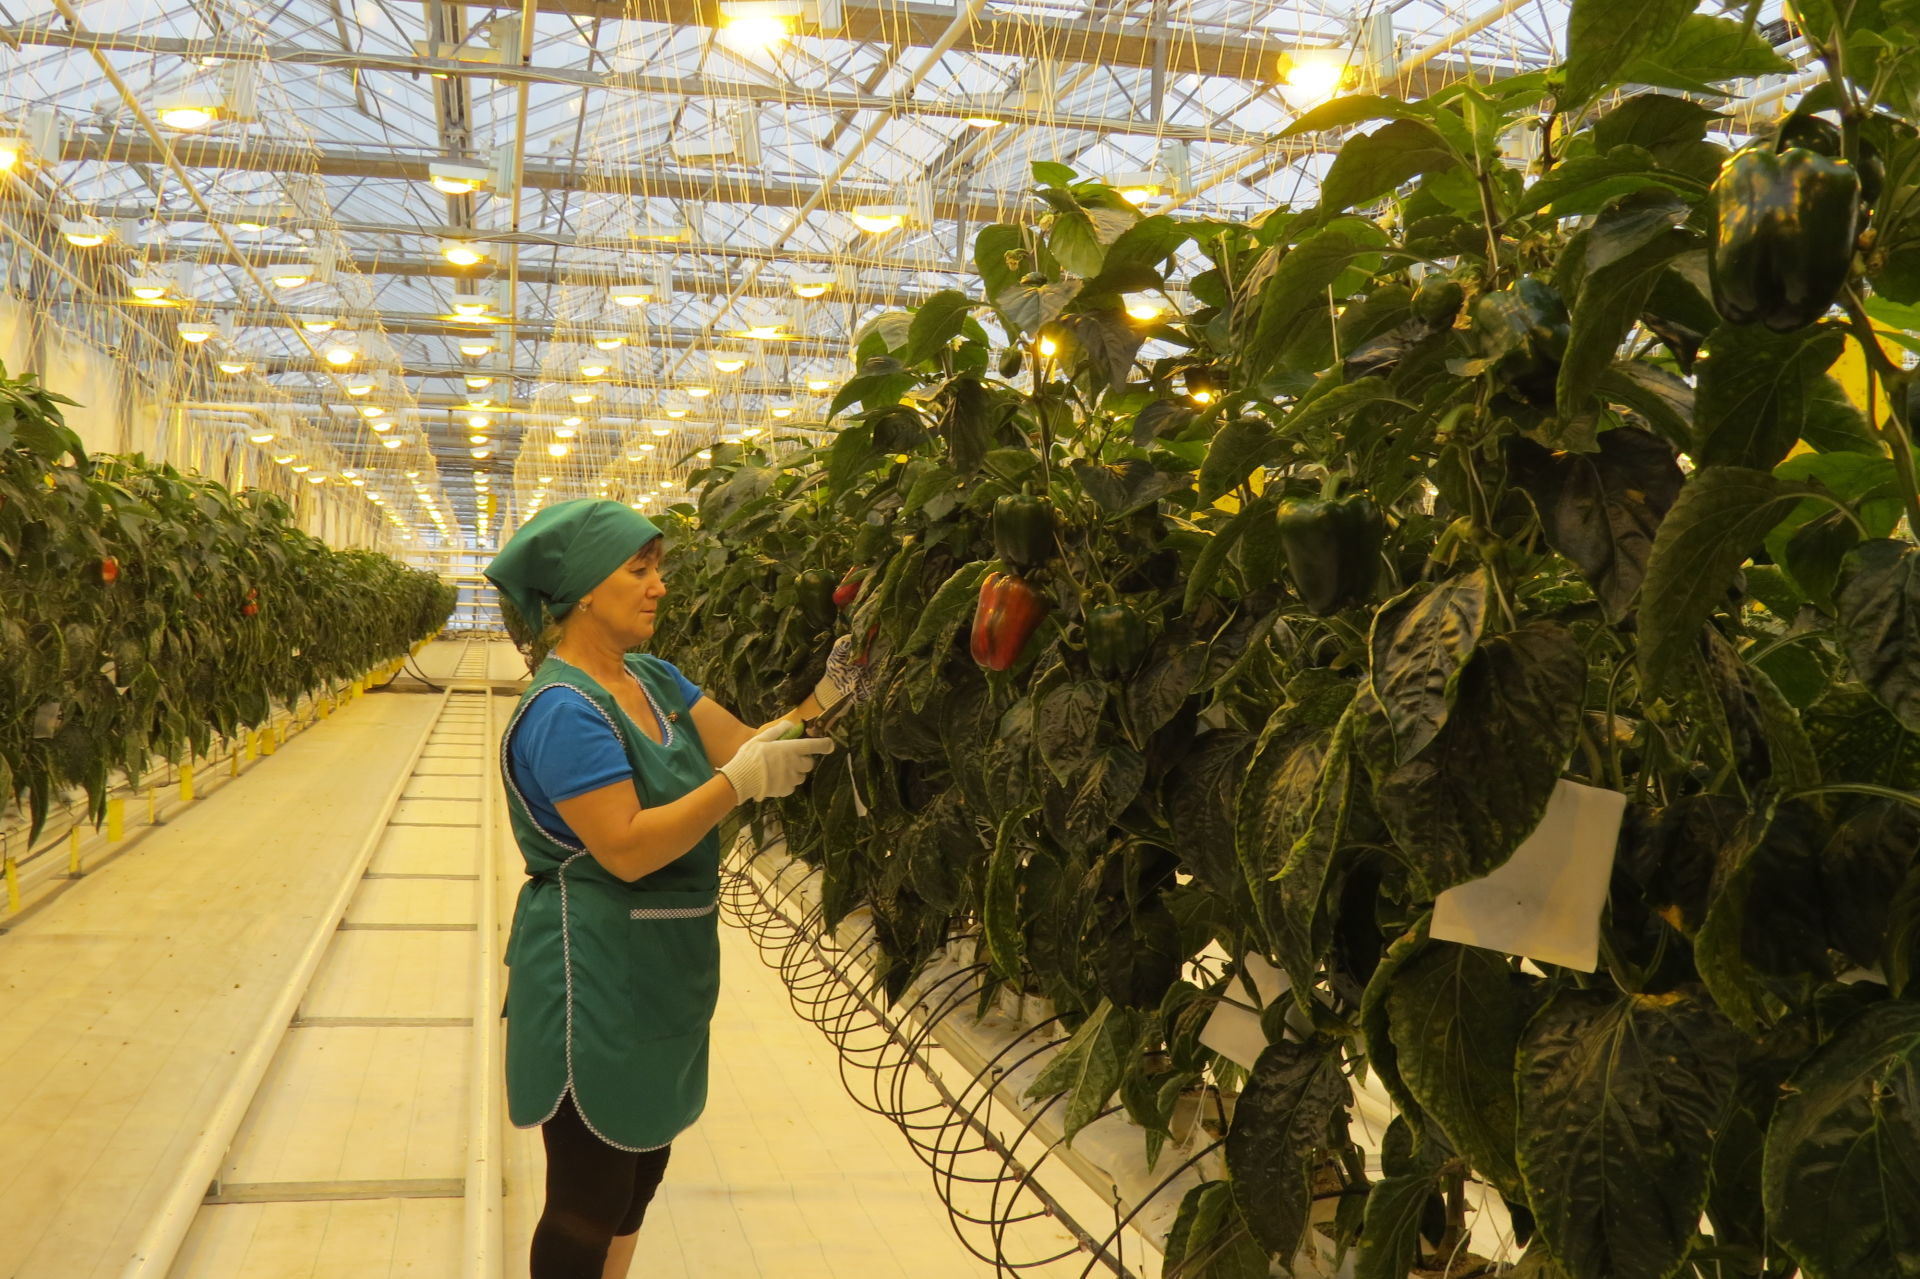 Министерство сельского хозяйства и продовольствия Республики Татарстан поздравляет работников агропромышленного комплекса со 100-летием ТАССР